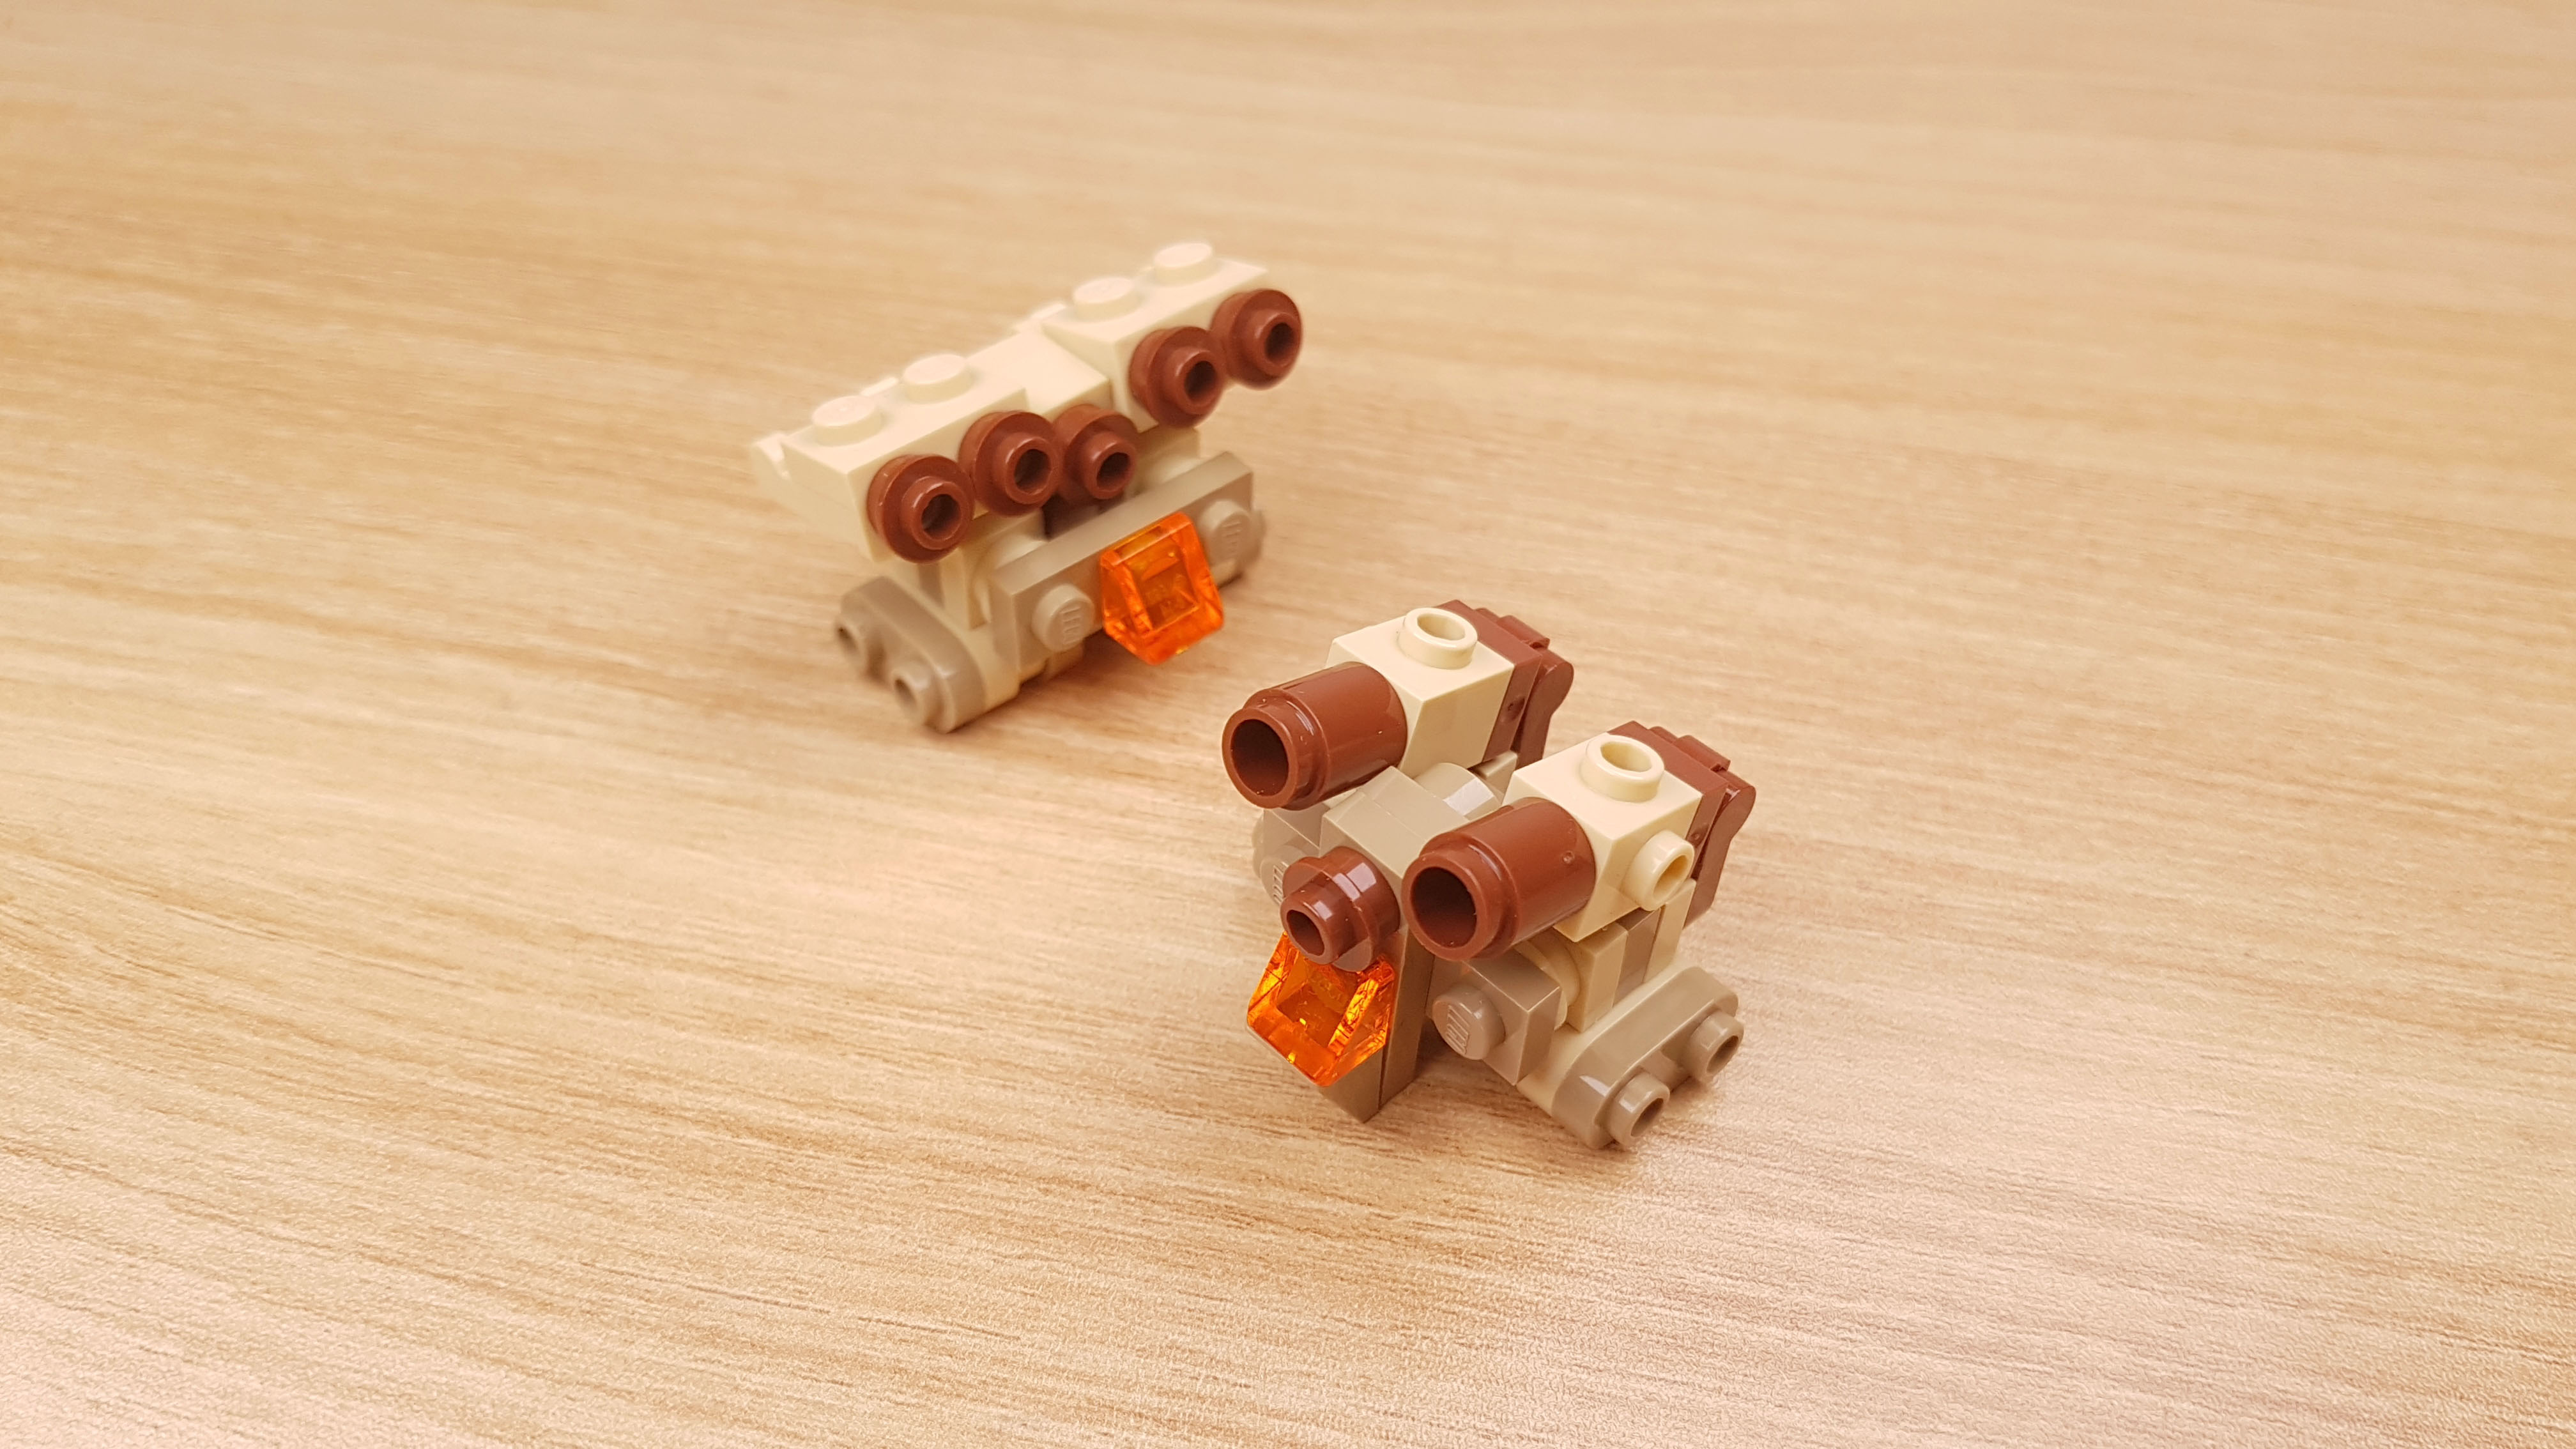 사막전투용으로 개발된 탱크형 2단 합체 미니레고로봇 - 탄 봇 2 - 변신,변신로봇,레고변신로봇